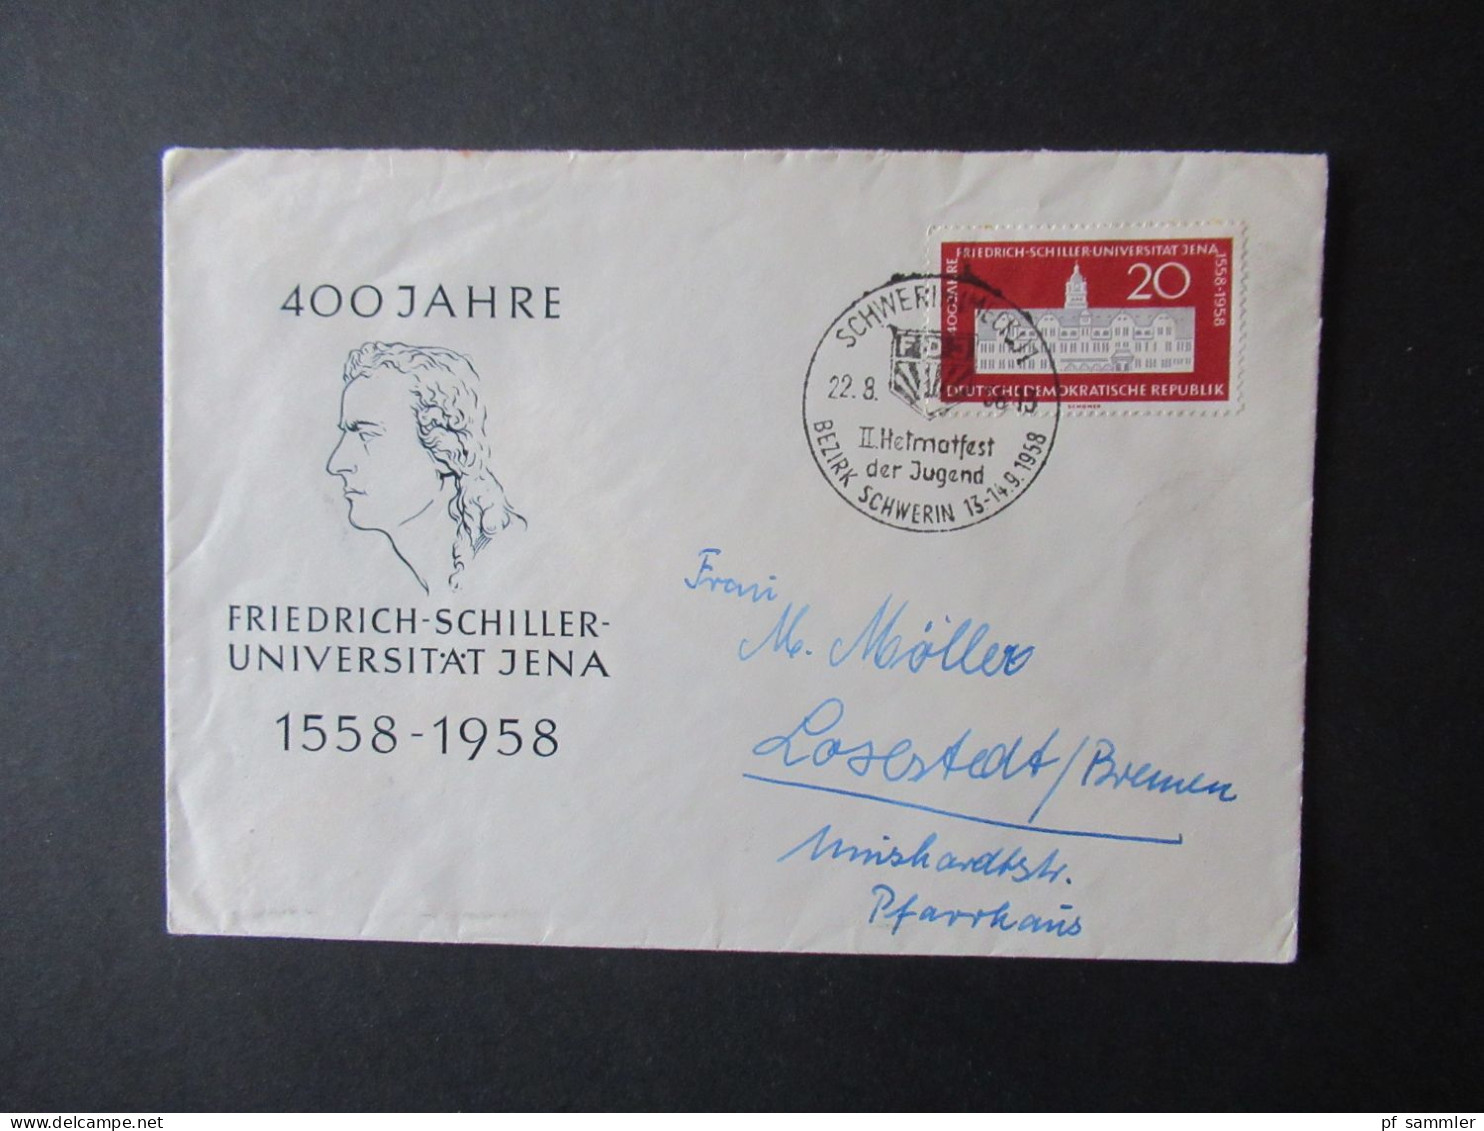 DDR 1950er Jahre FDC Posten / fast nur echt gelaufene Belege! Insgesamt 30 Belege / ab 1956